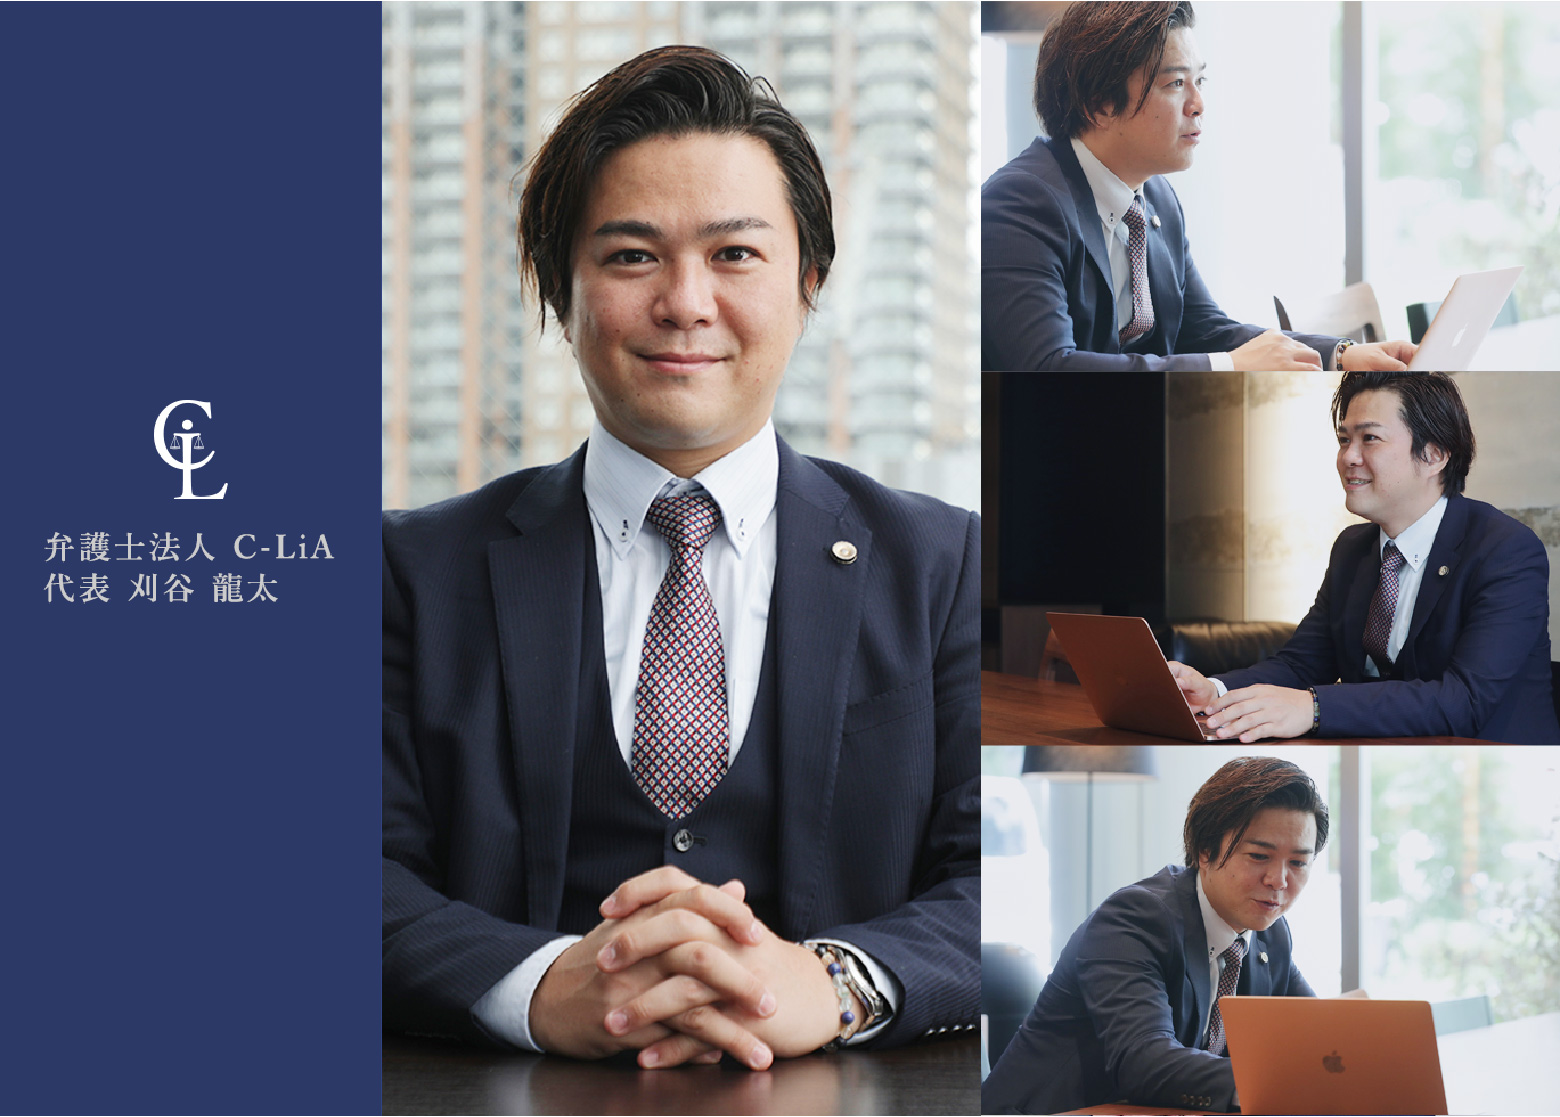 弁護士法人C-LiA 代表 刈谷龍太